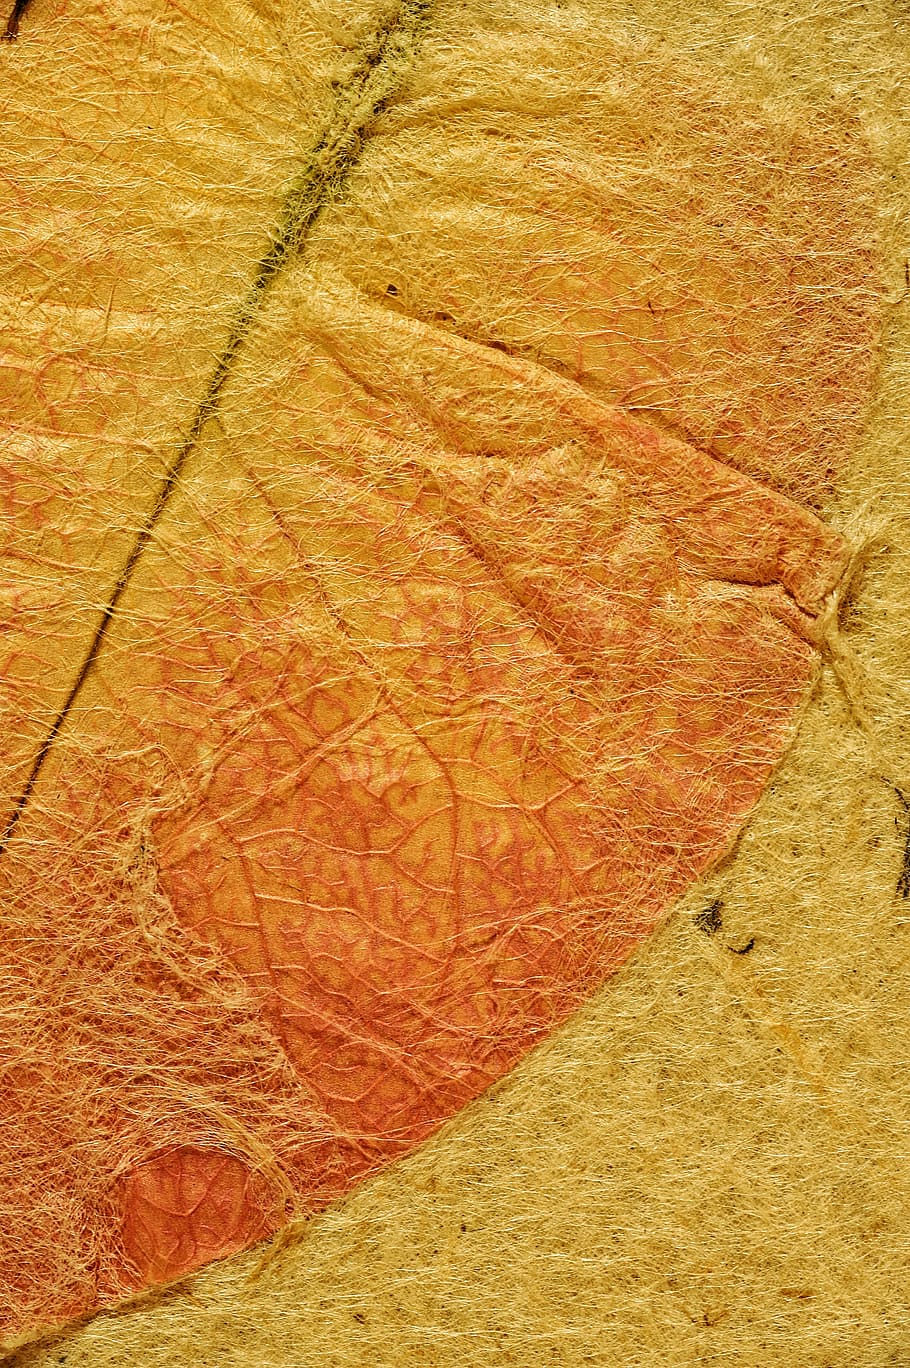 orange leaf, map, parchment, ancient, background, texture, zen, time, gold, book